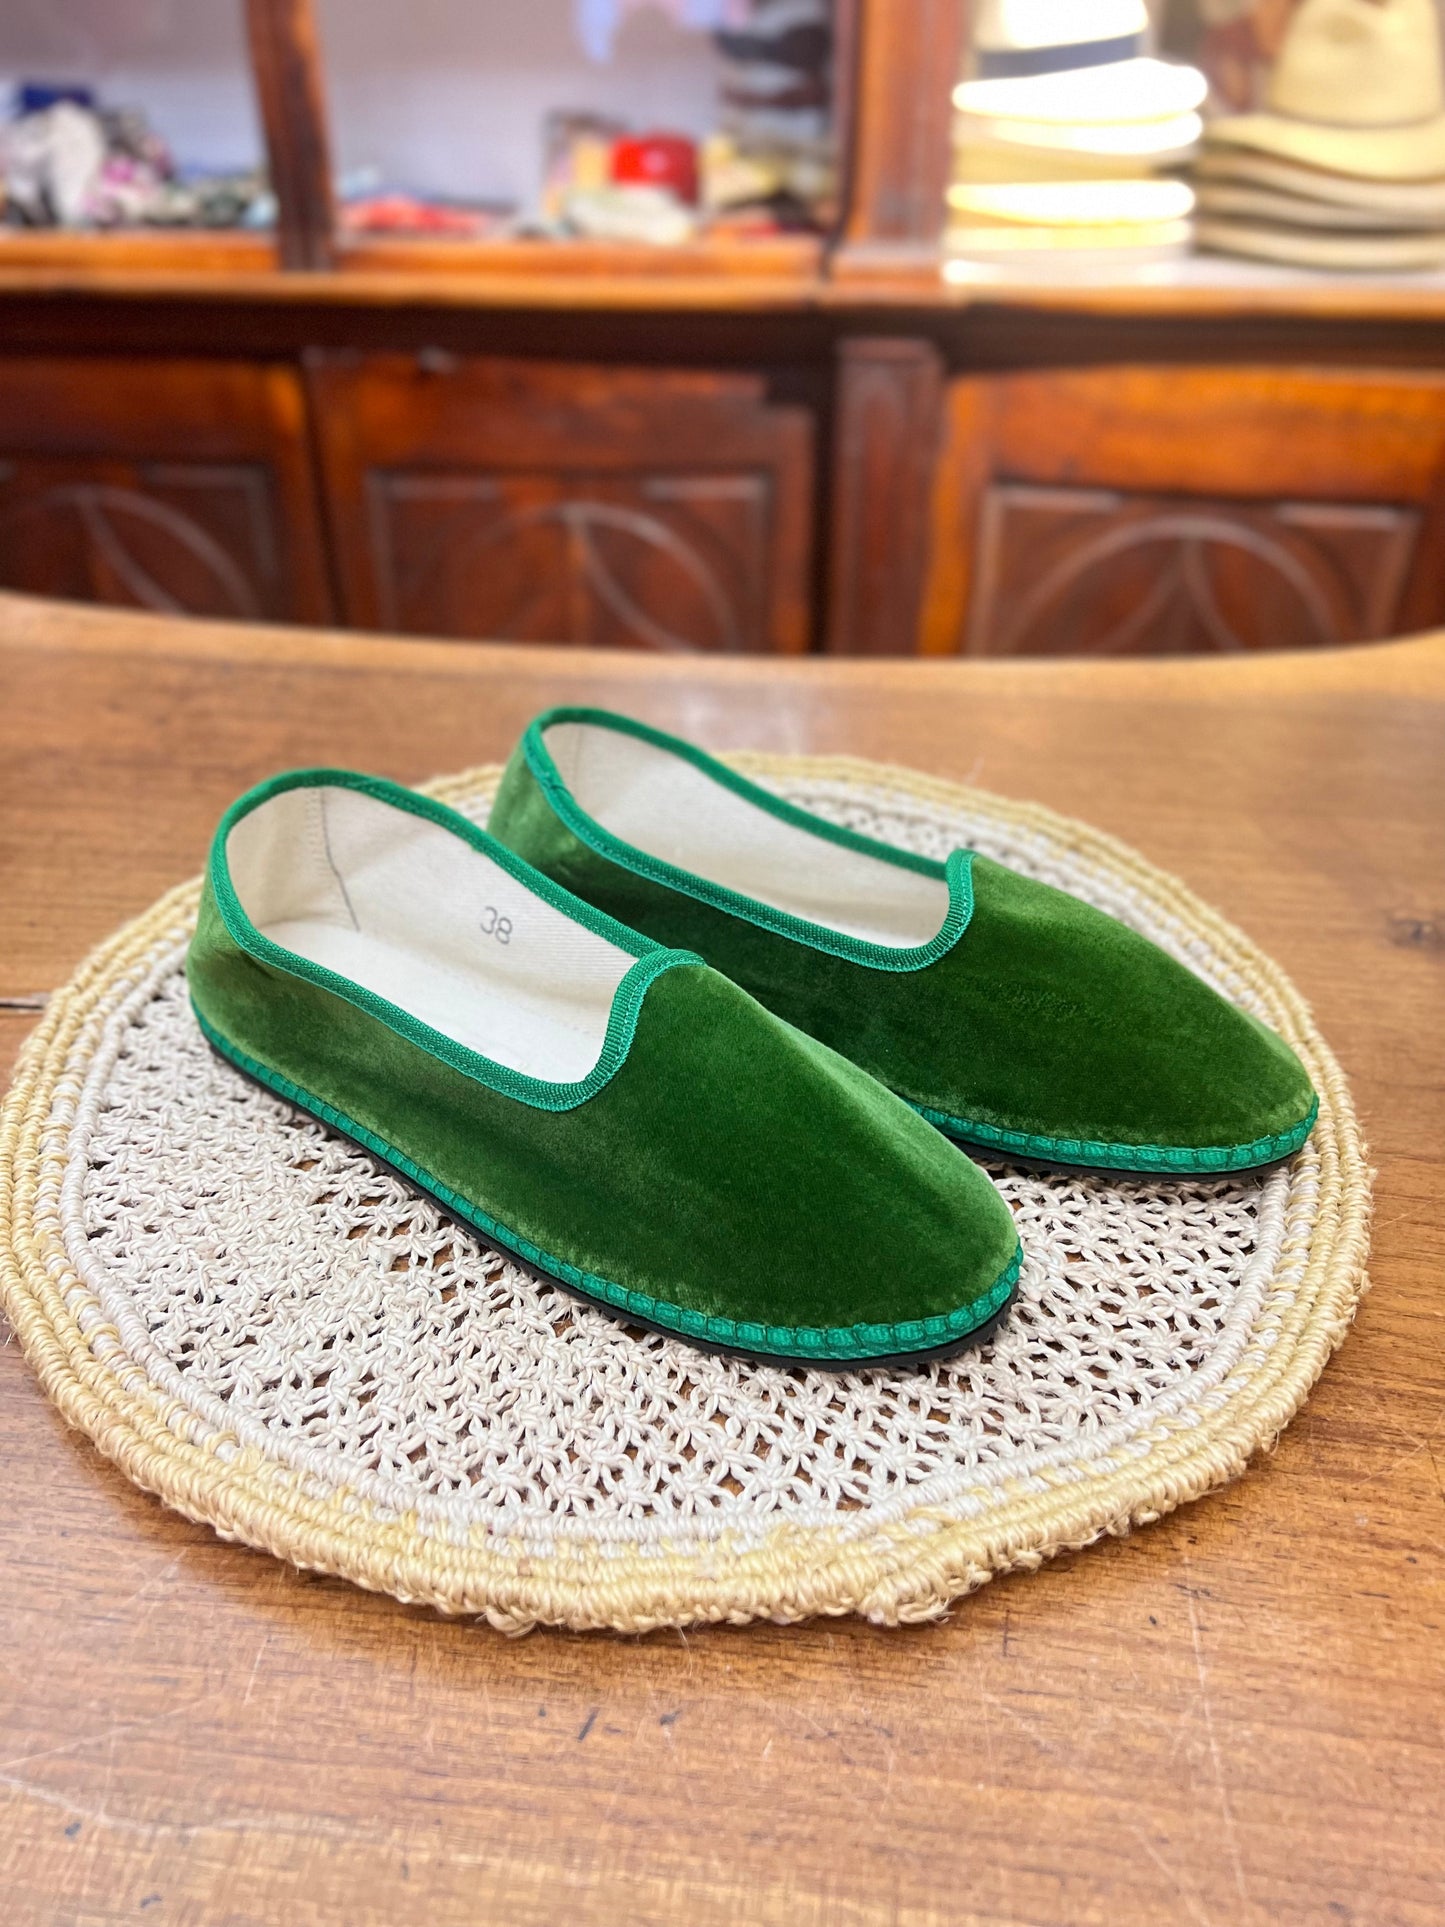 Friulane scarpe di colore verde smeraldo